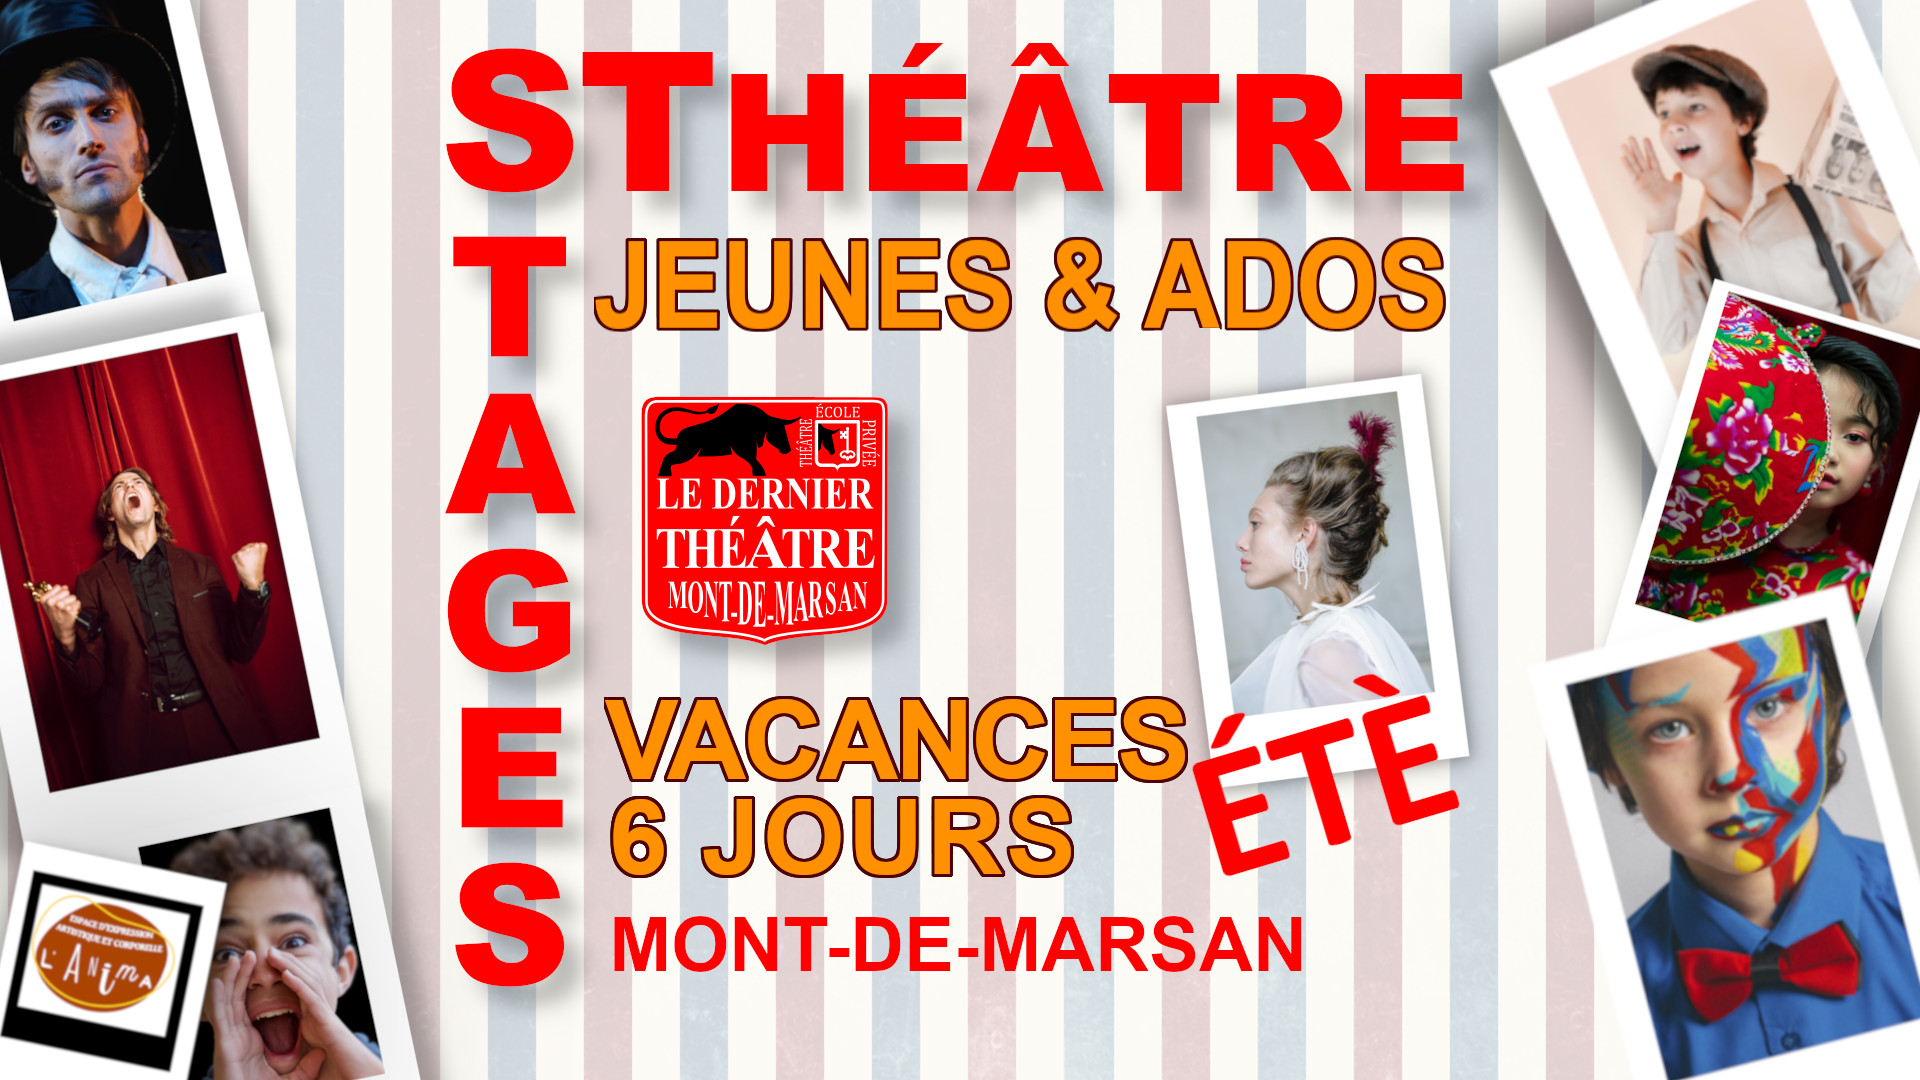 Le dernier théâtre - École privée art Dramatique - Stages Jeunes Ados Vacances été